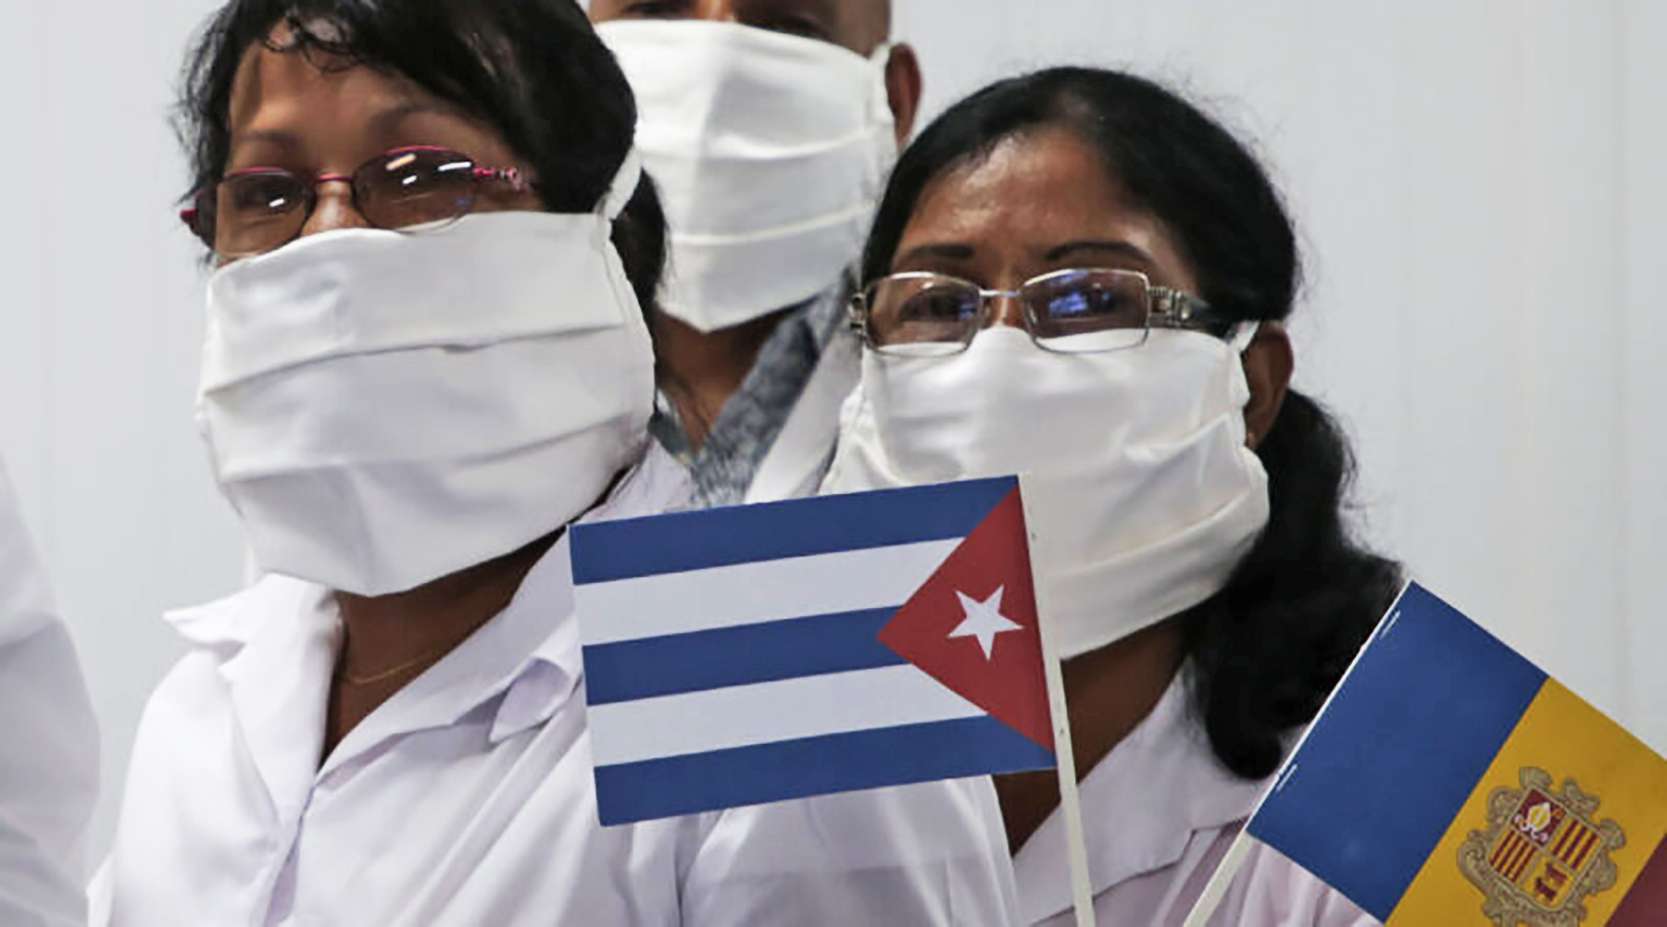 κουβανική ιατρική διεθνιστική βοήθεια κλείνει έξι δεκαετίες 1